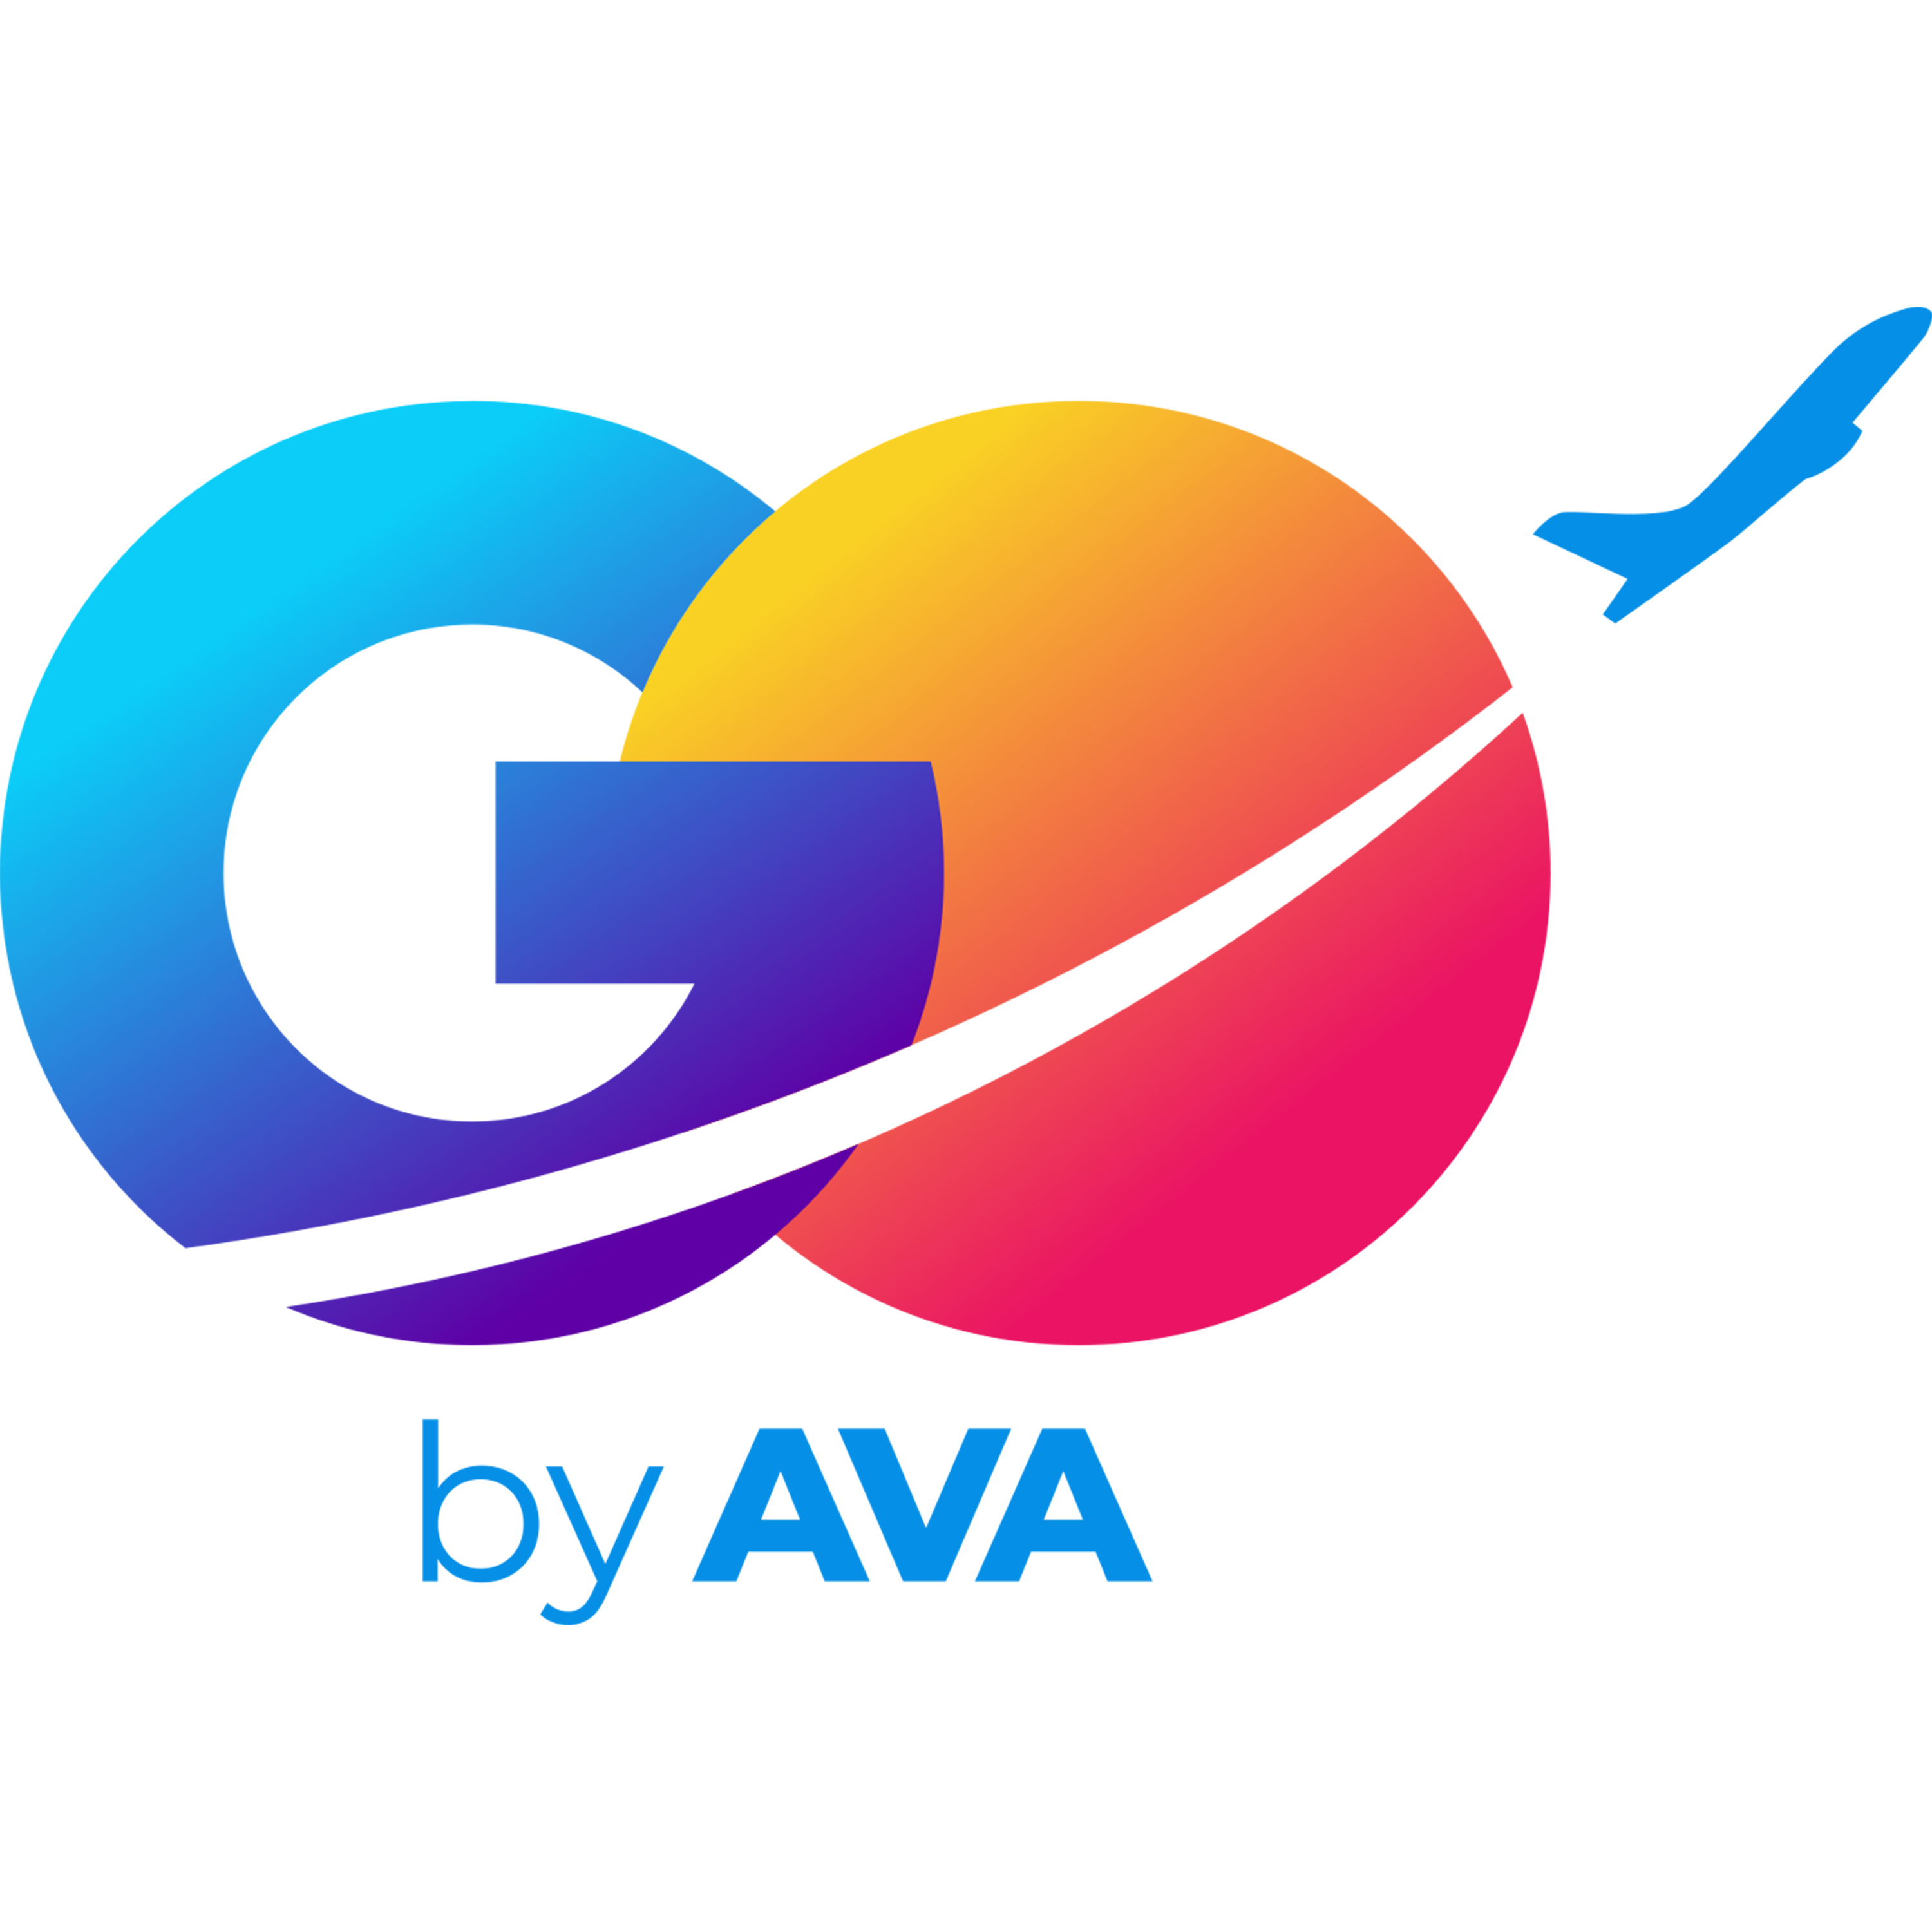 logo go by ava